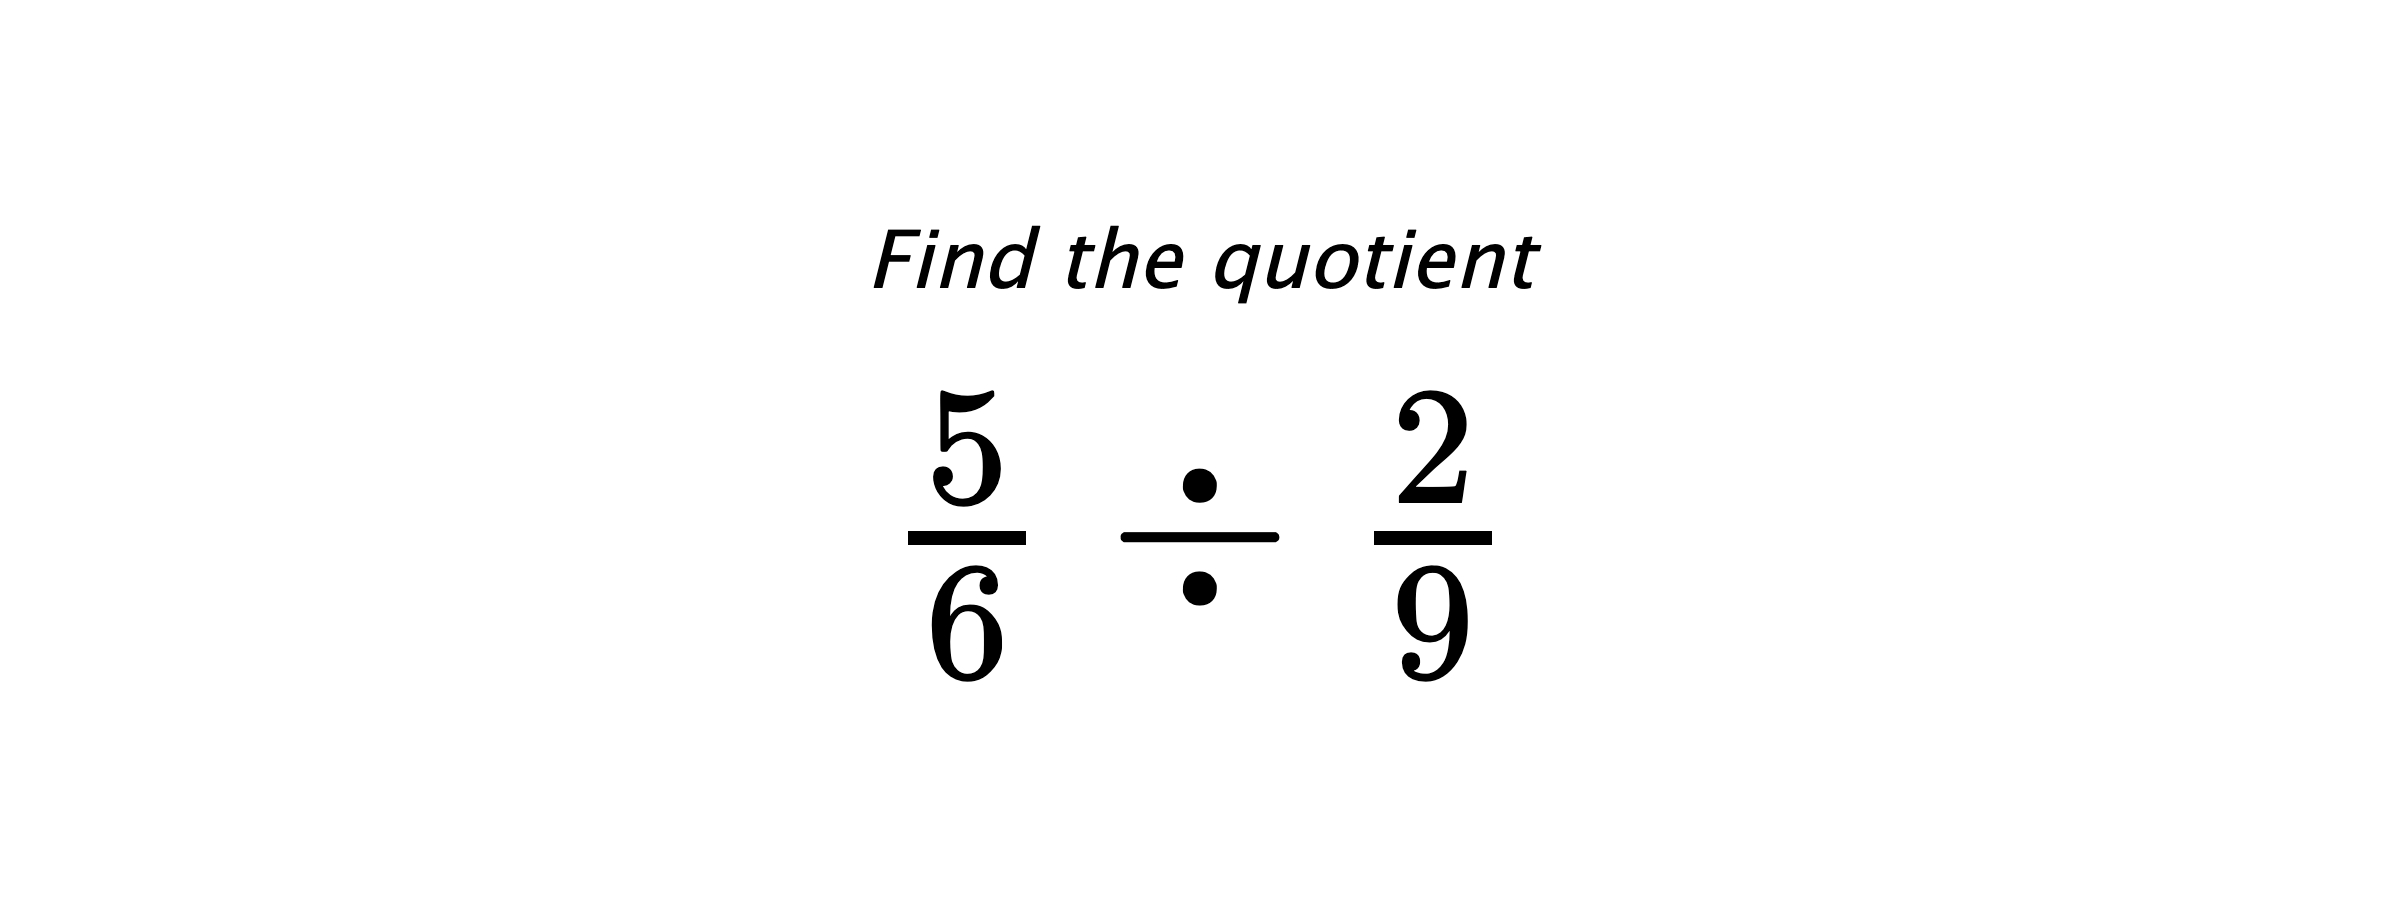 Find the quotient $ \frac{5}{6} \div \frac{2}{9} $